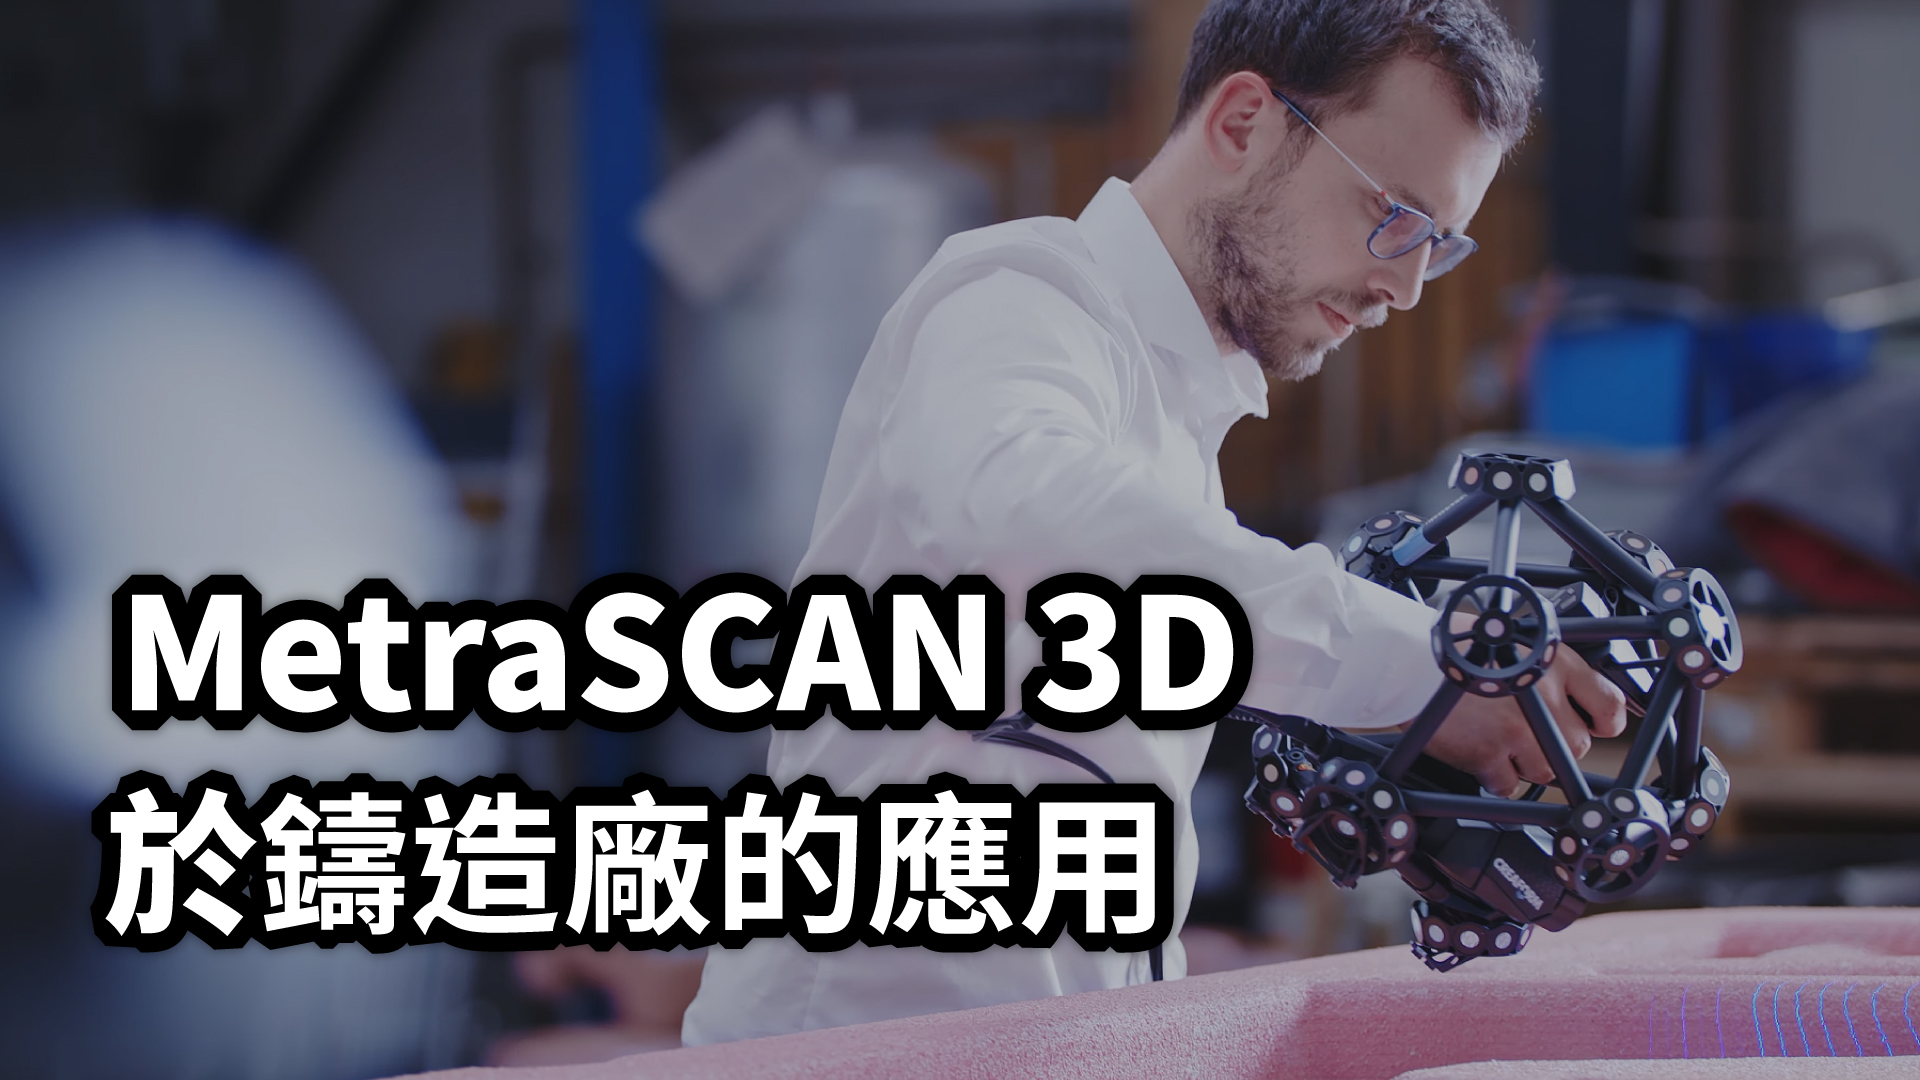 MetraSCAN 3D於鑄造廠的應用